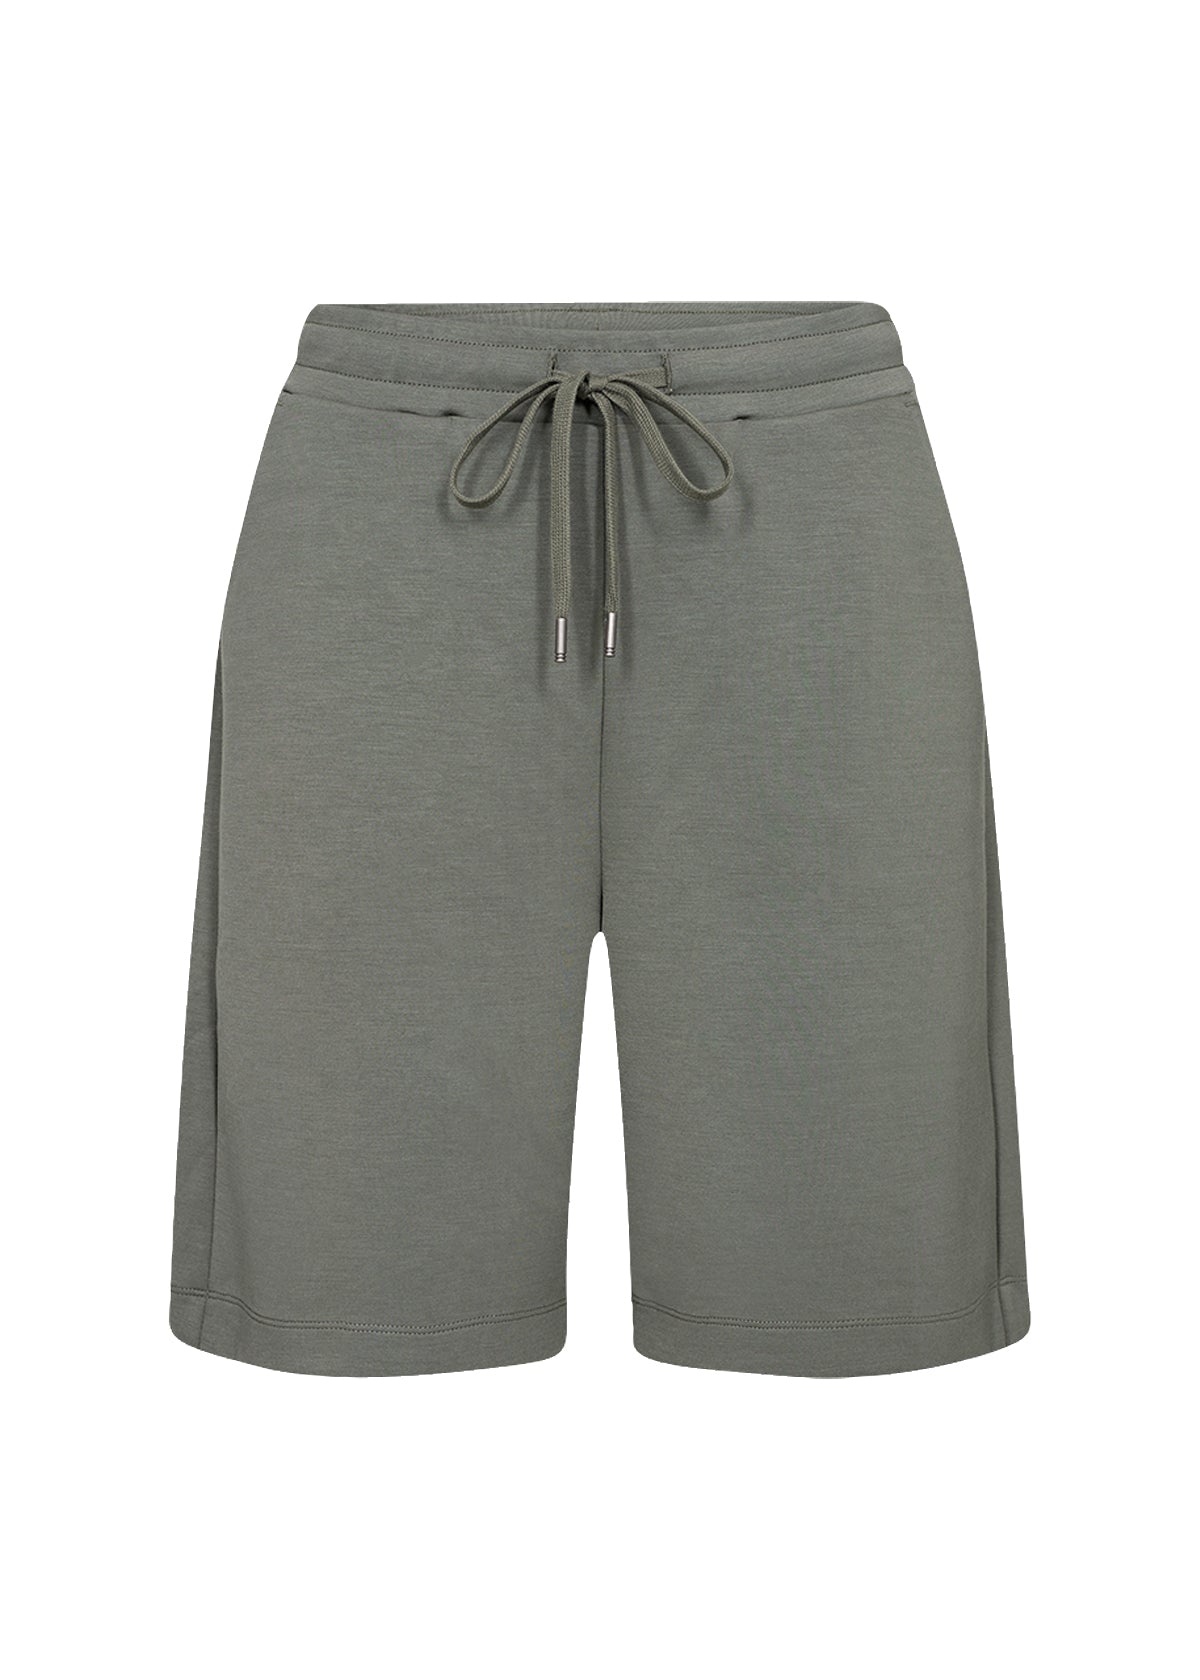 SC-BANU 78 shorts